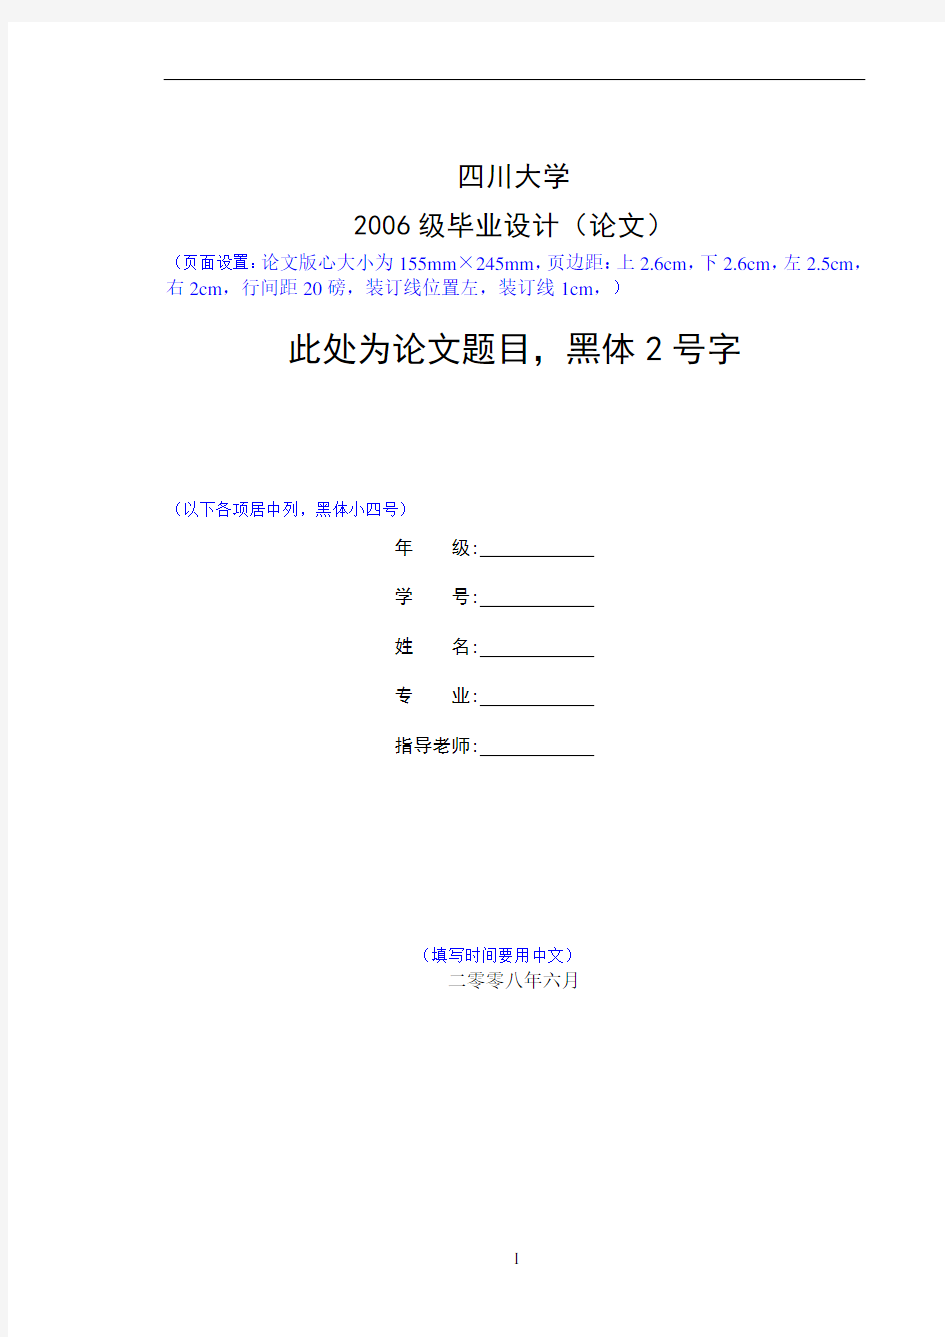 四川大学 毕业论文格式模板